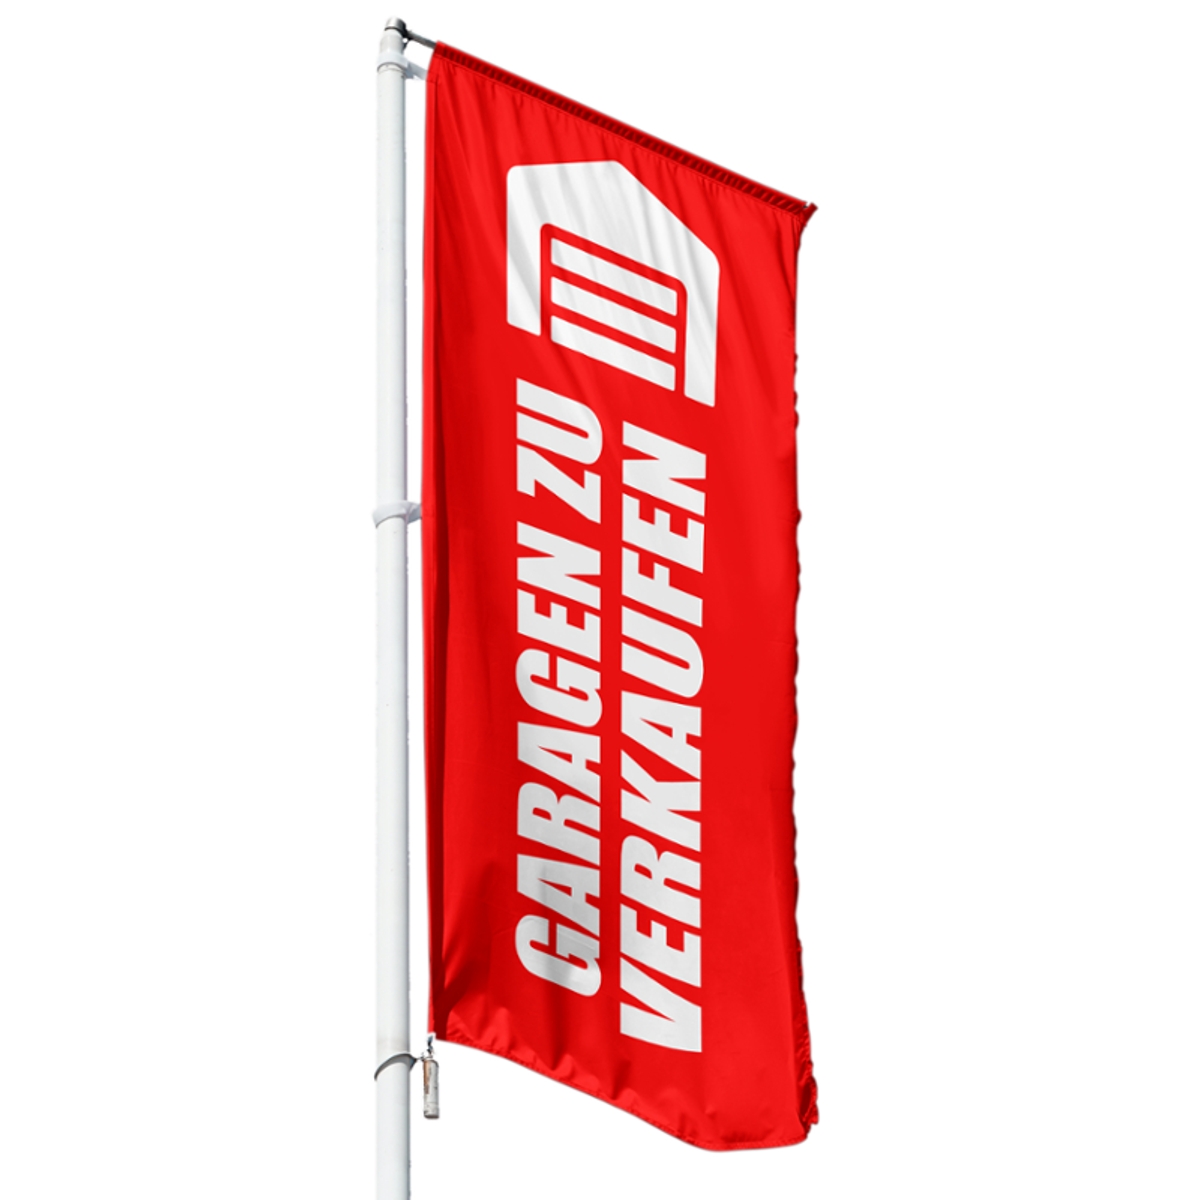 Garagen zu verkaufen Hissflagge, Fahne im Wunschformat (3997)